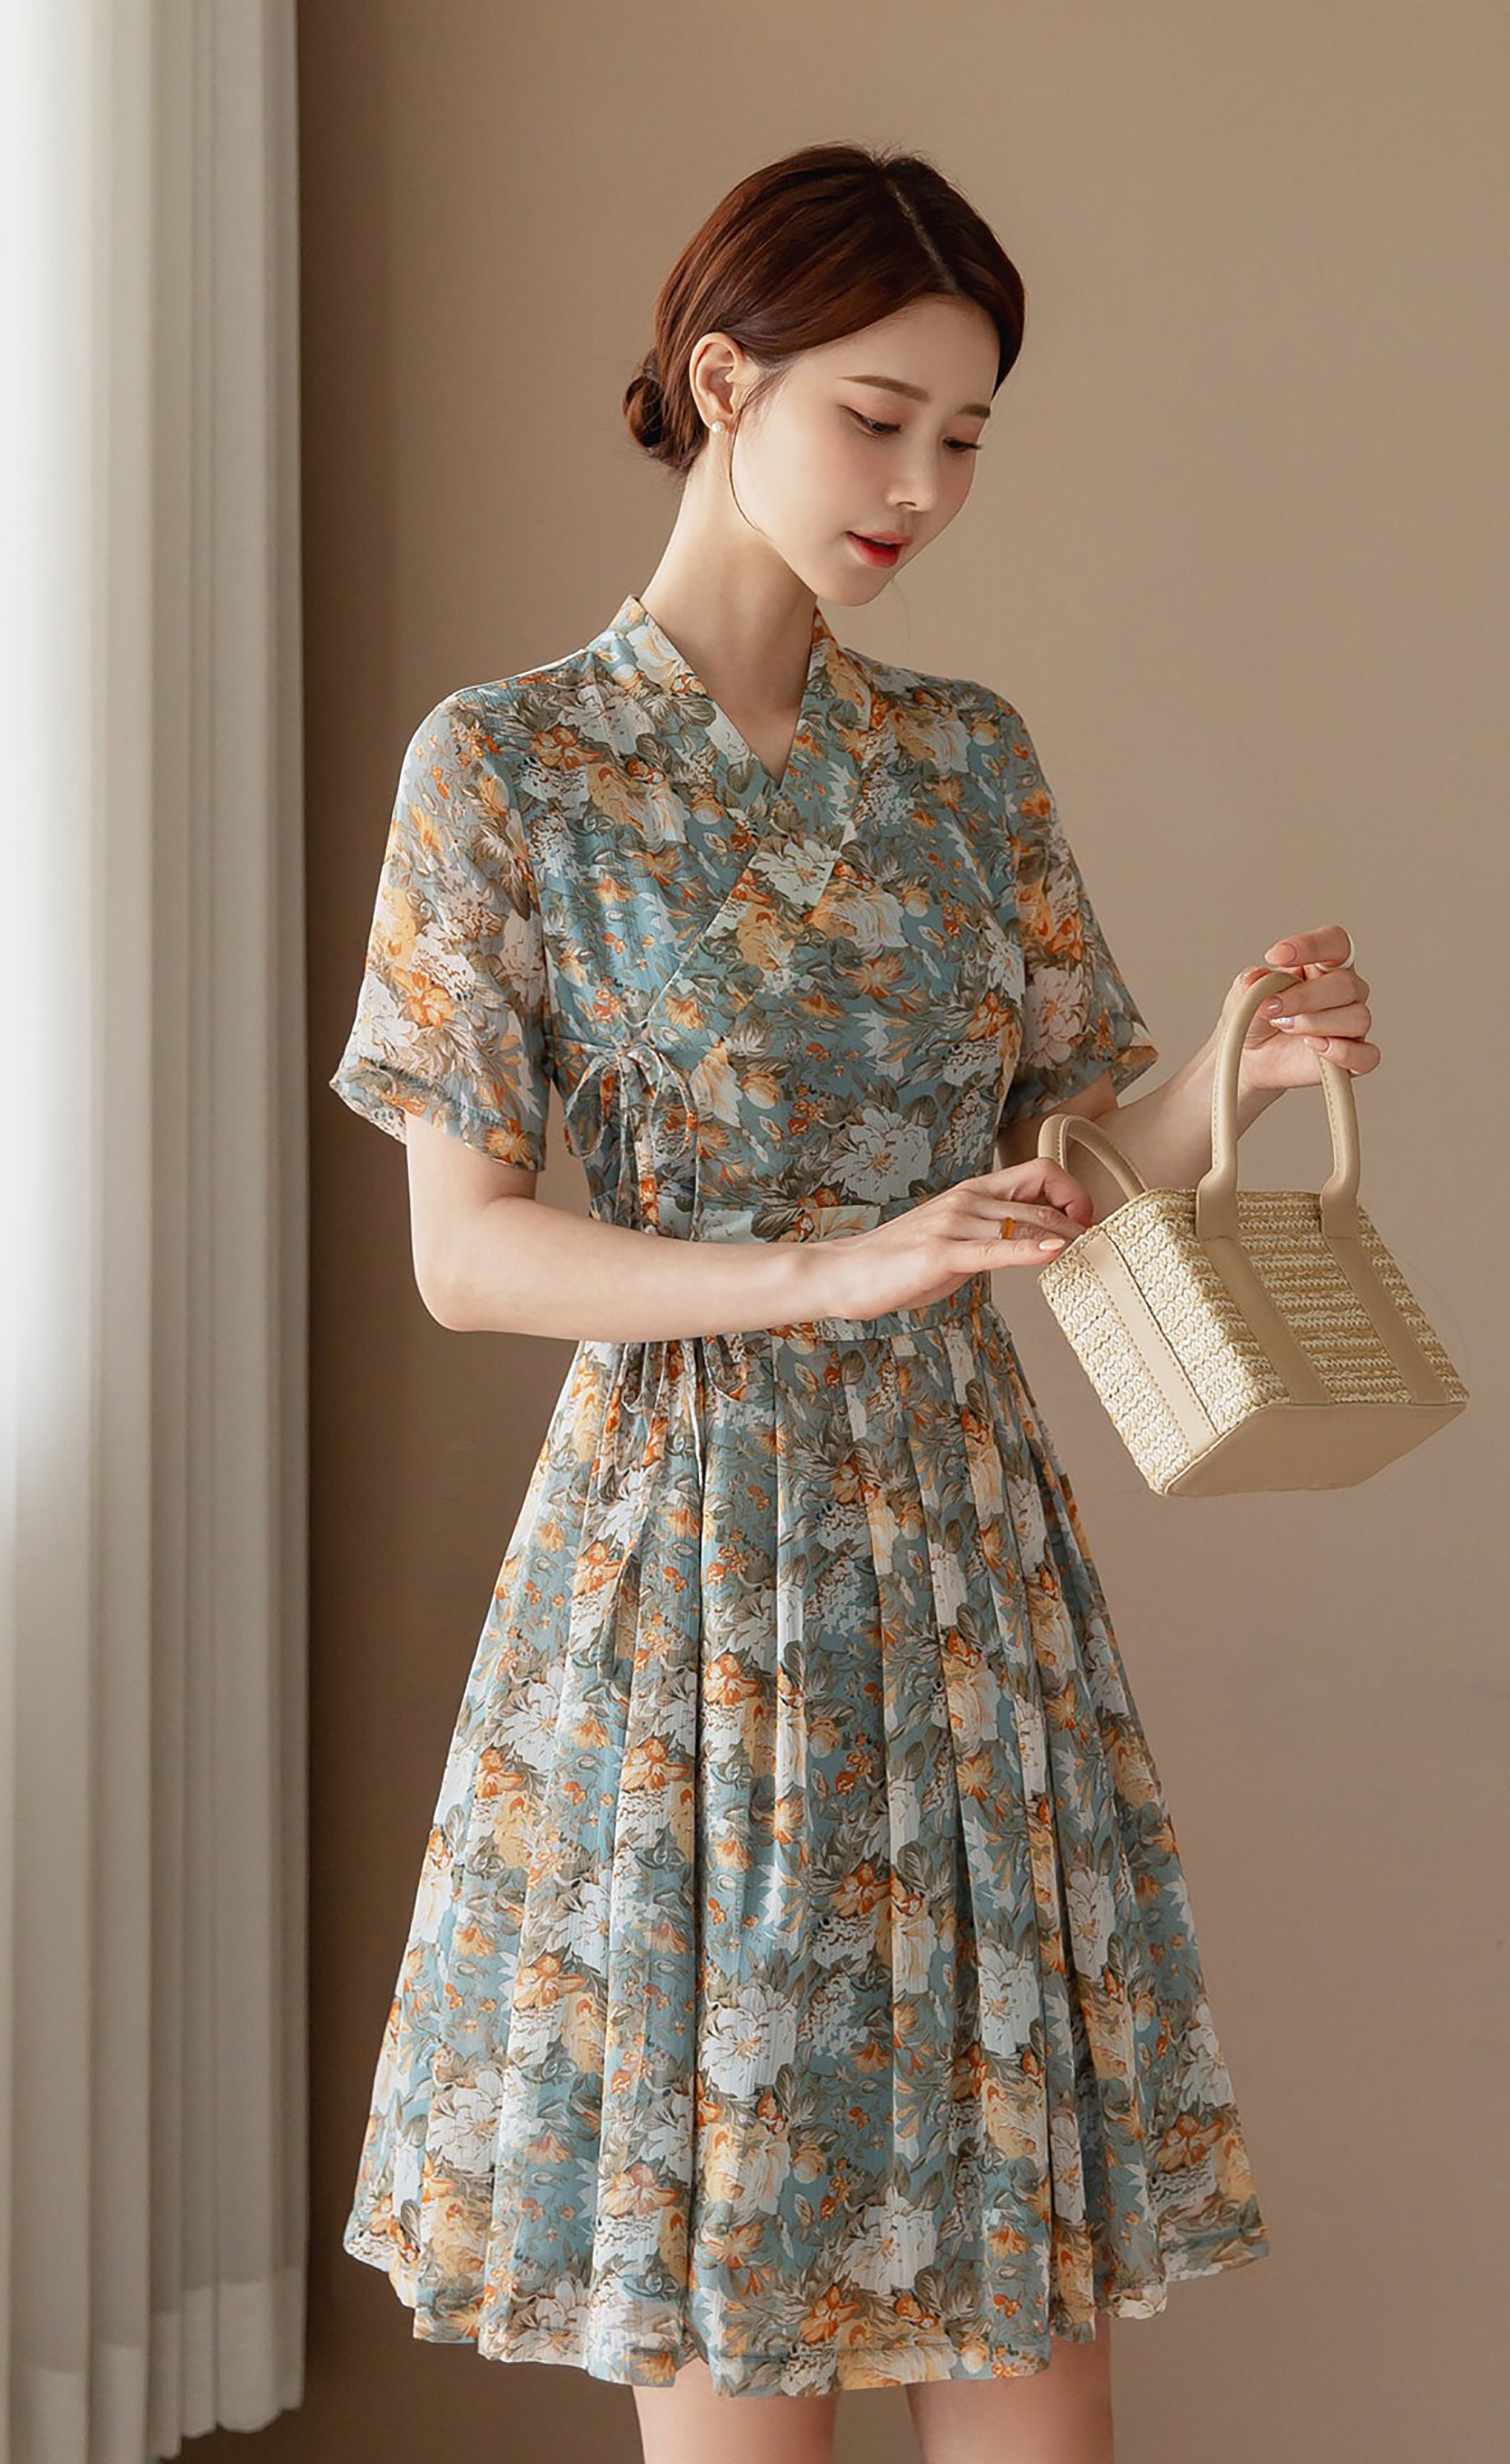 Women's Modern Hanbok Dress Mint Flower Orange Wrapped | Etsy